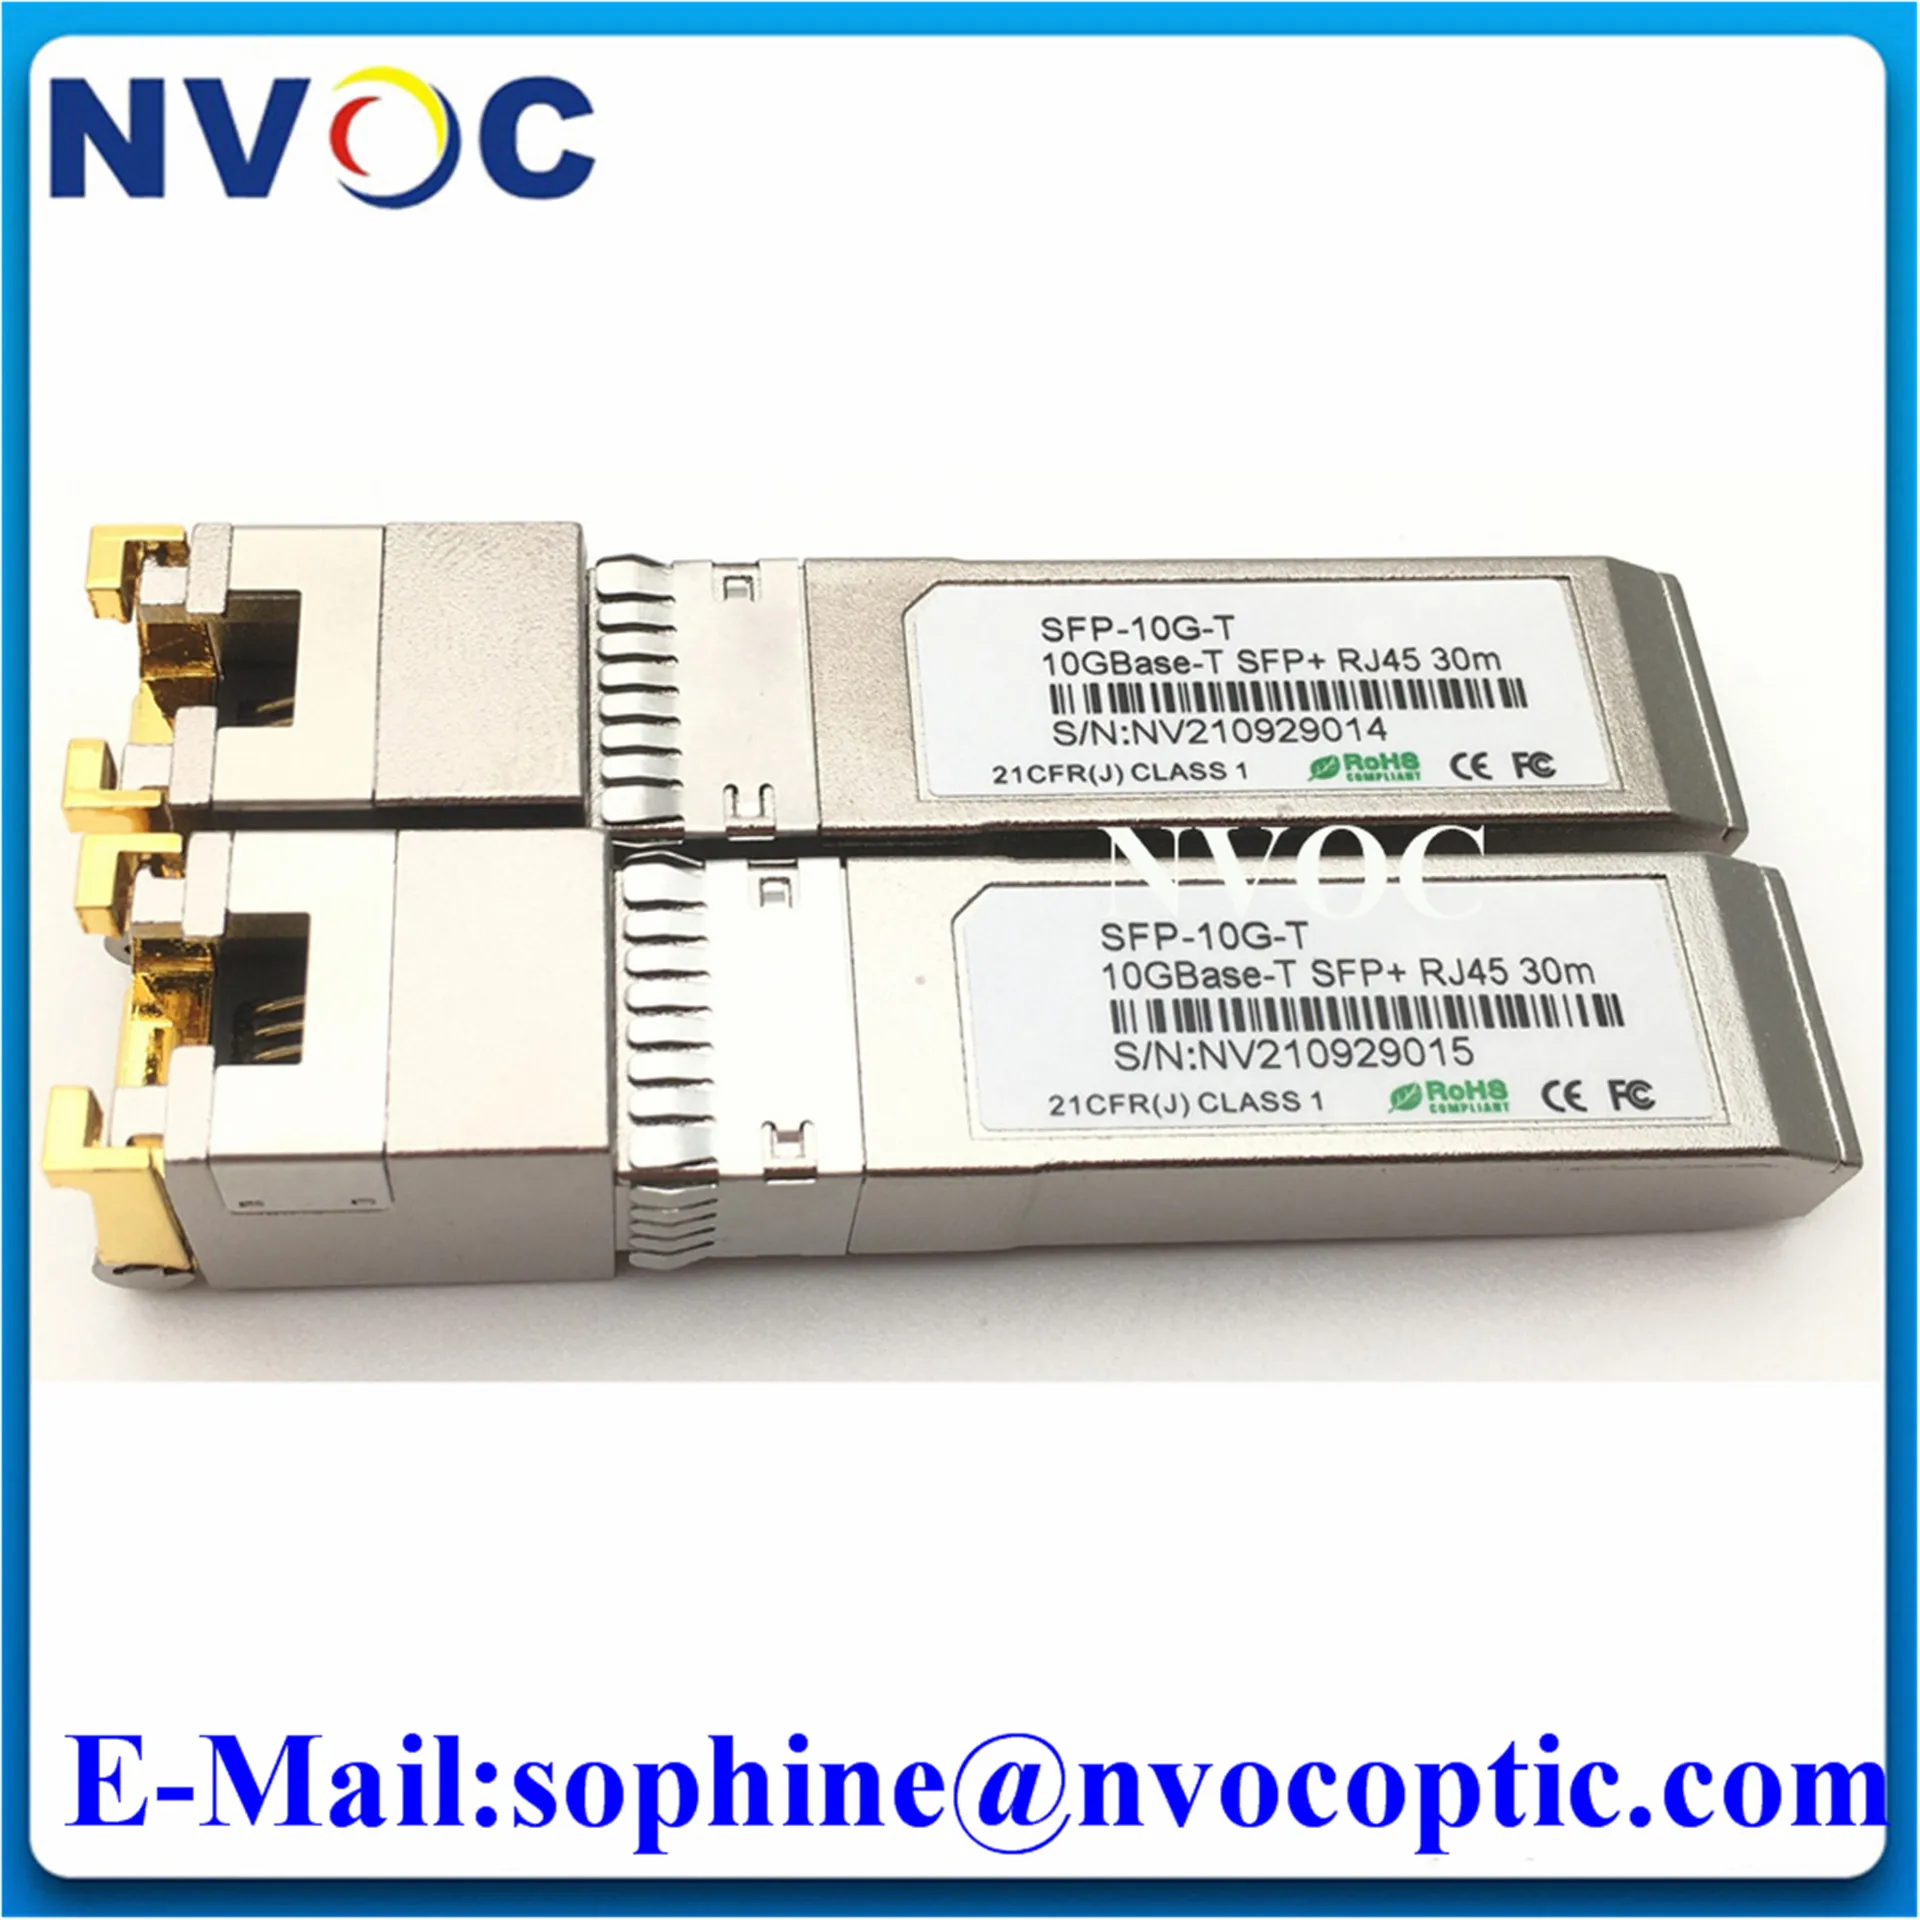 

2pcs 10G RJ45 Copper SFP+ Module 10GBase-Tx Ethernet Fiber Optic FTTH Compatible with Cisco/Mikrotik Switch 30m